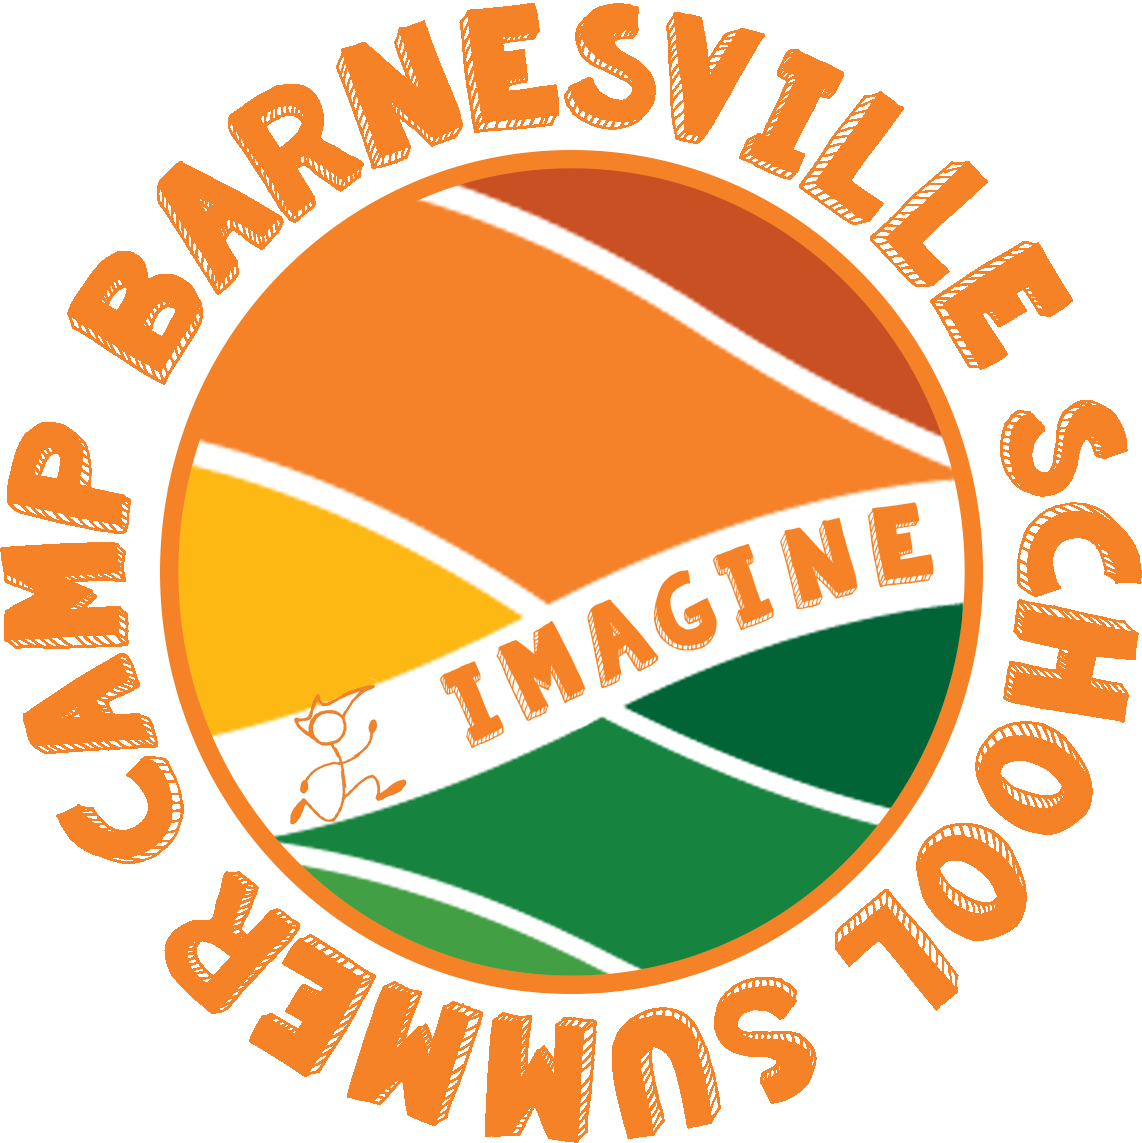 Barnesville School Of Arts & Sciences (1142x1143)